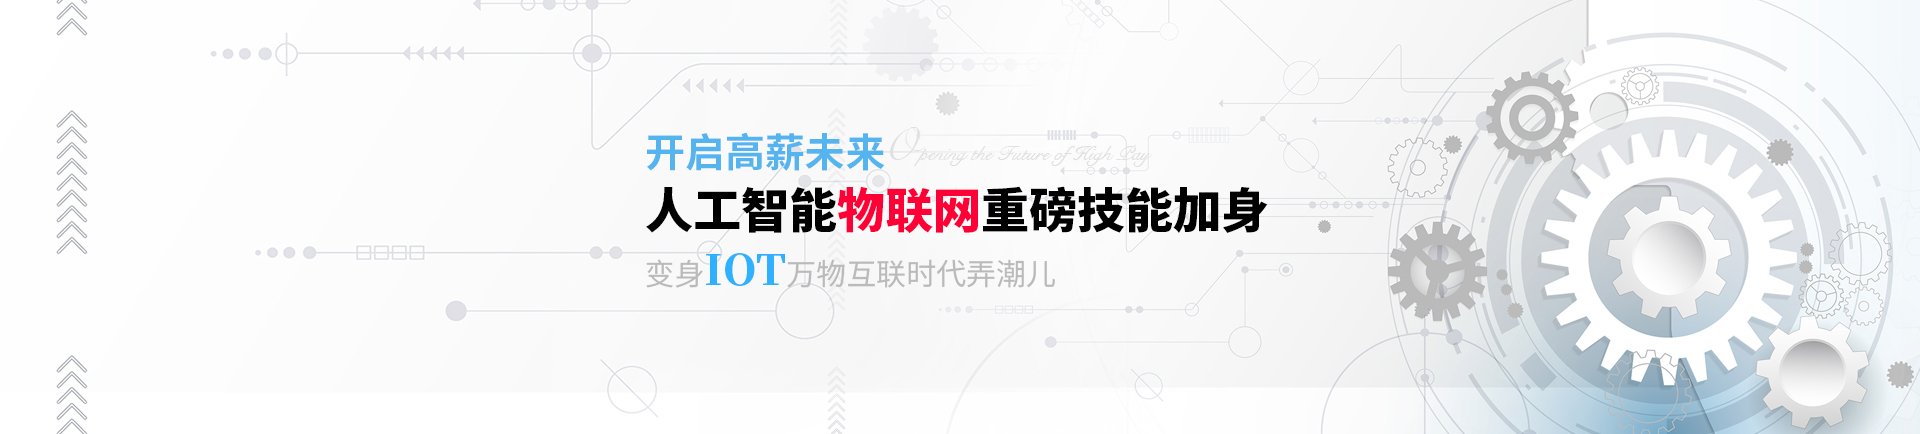 人工智能物联网重磅技能加身 变身IOT万物互联时代弄潮儿-suzhou